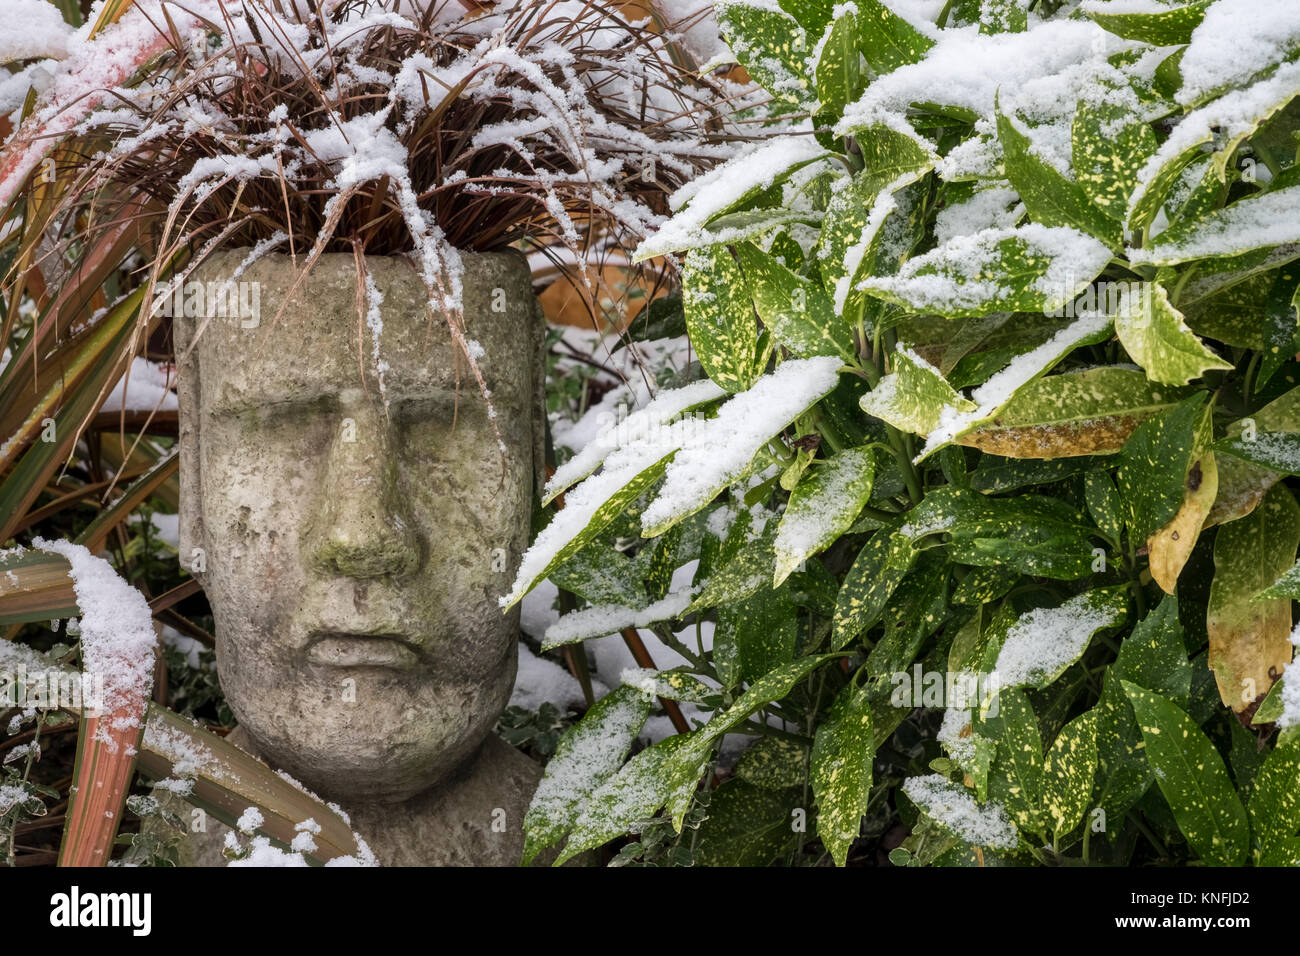 Pot de jardin avec gazon ornemental Uncinia rubra Red Hook de carex, dans des conditions hivernales. Evergreen Laurel et Phormium Jester plantes utilisées comme compagnons. Banque D'Images